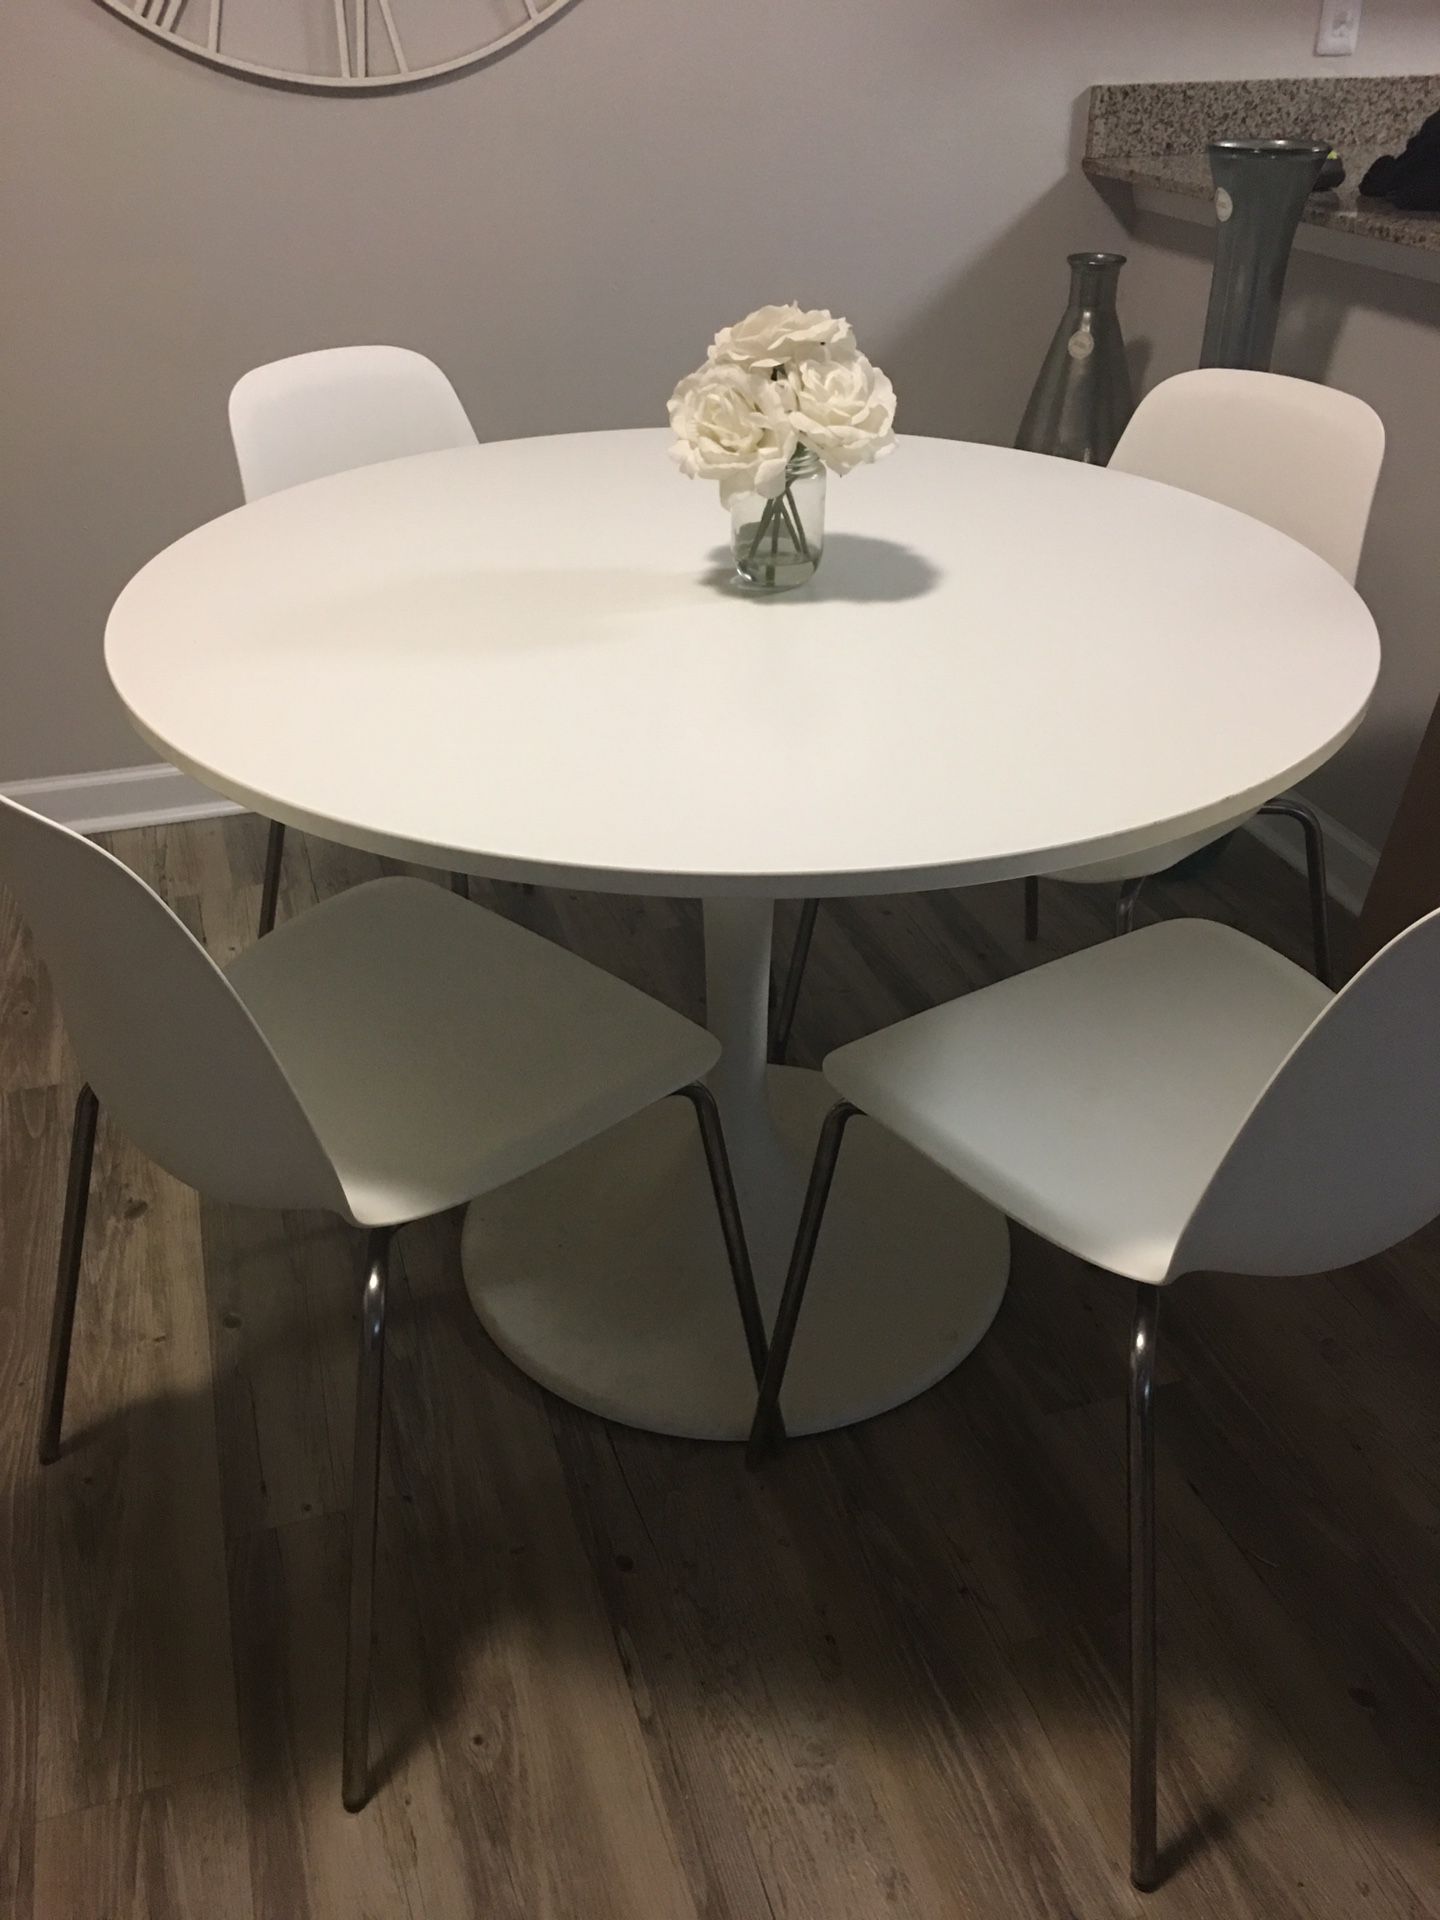 IKEA kitchen table set